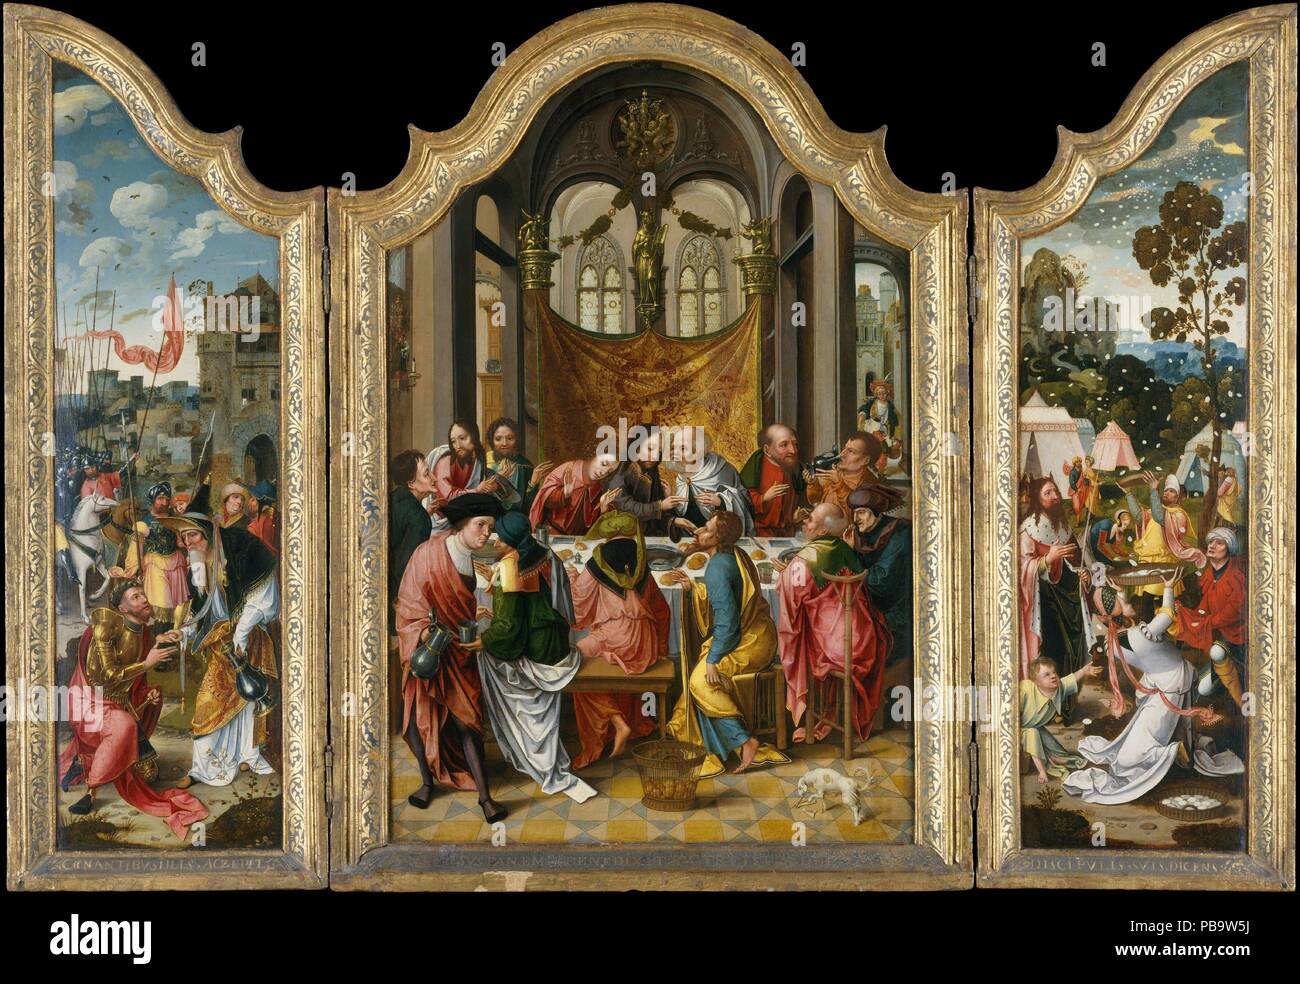 La dernière Cène. Artiste : Anvers (Russisch peintres maniéristes) (premier quart du 16e siècle). Dimensions : hors tout, avec haut de forme et engagé cadre : panneau central 47 x 33 3/4 in. (119,4 x 85,7 cm) ; aile gauche 47 x 16 7/8 in. (119,4 x 42,9 cm) ; aile droite 47 1/8 x 17 in. (119,7 x 43,2 cm). Date : 1515-20. Au moins trois artistes ont collaboré à ce retable bien conservé, qui est encore dans sa version originale (mais regilt) cadre. Adam et Eve à l'extérieur sont fondées sur la gravure de Dürer 1504 de l'objet. Les scènes de l'Ancien Testament sur les ailes intérieures sont prefigurations de la Dernière Cène, w Banque D'Images